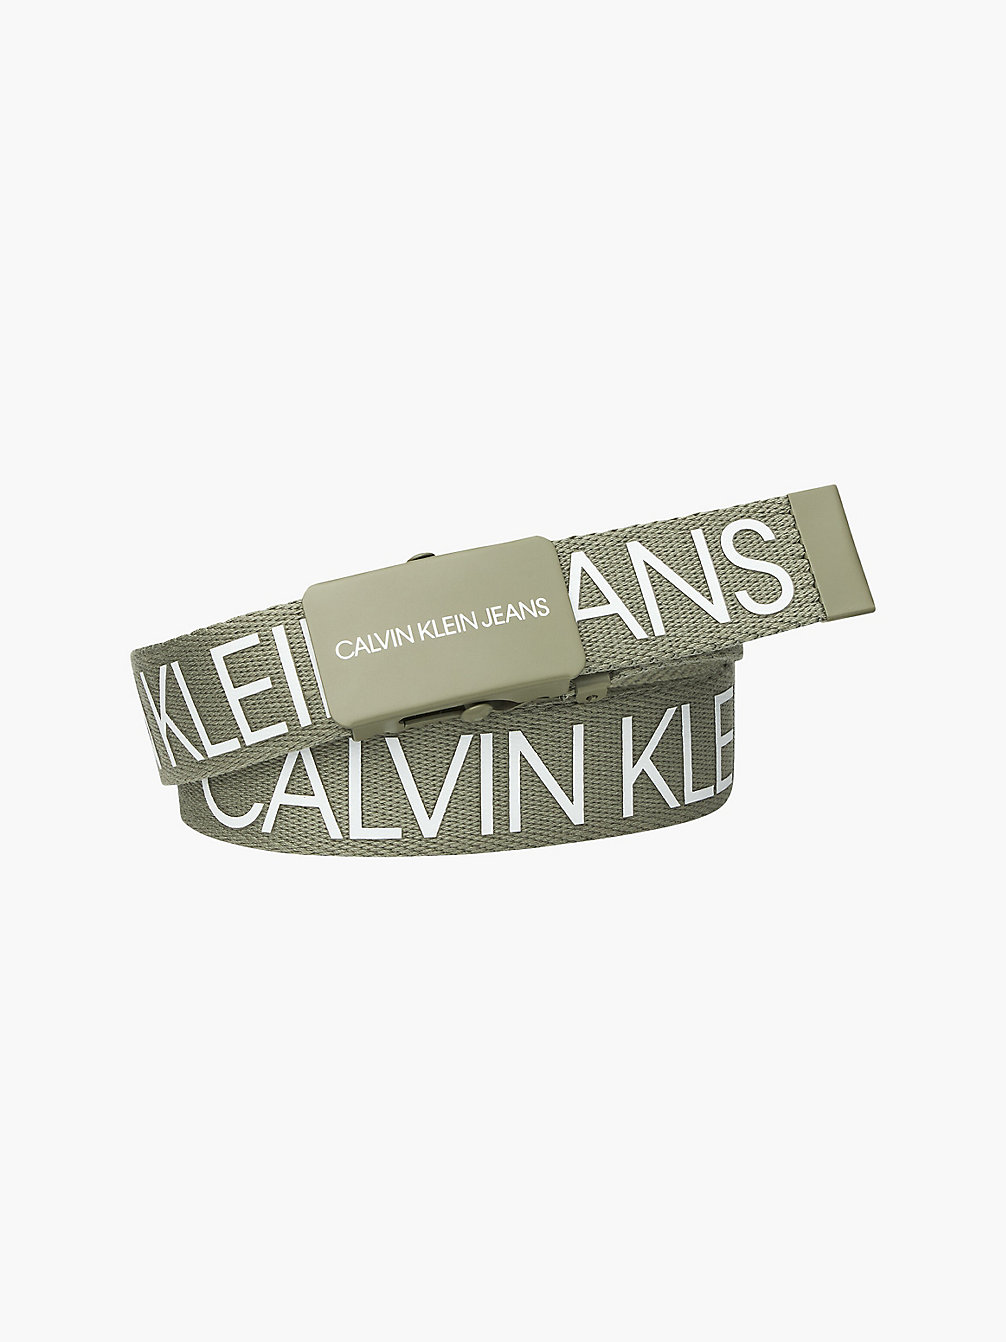 FOREST KHAKI Unisex Riem Met Logo undefined girls Calvin Klein